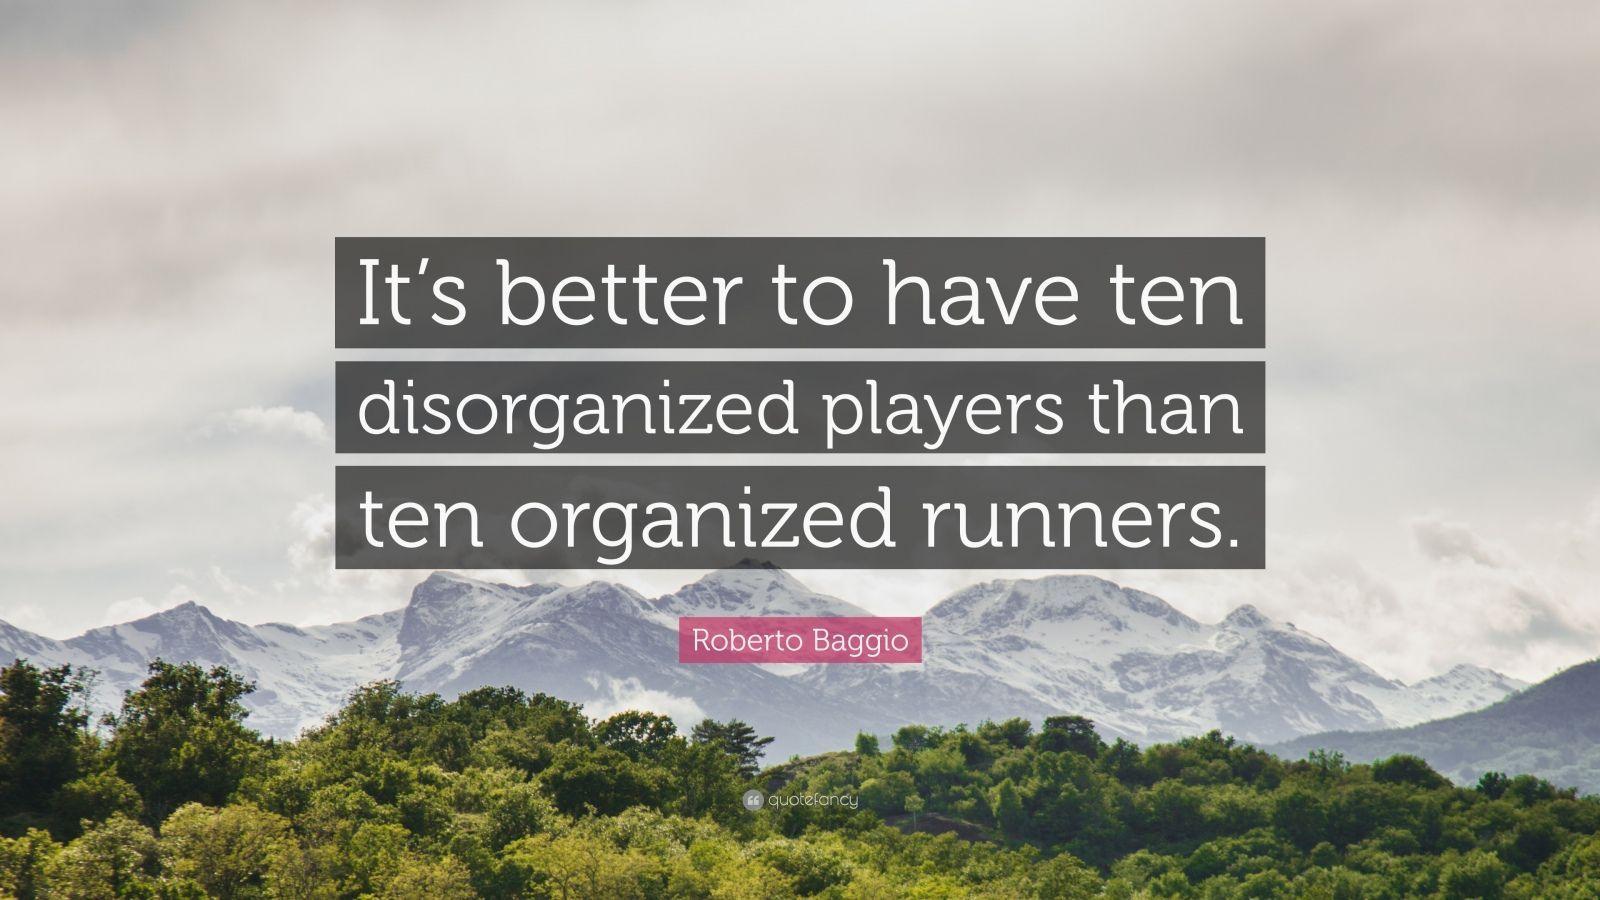 Roberto Baggio Quote: “It's better to have ten disorganized